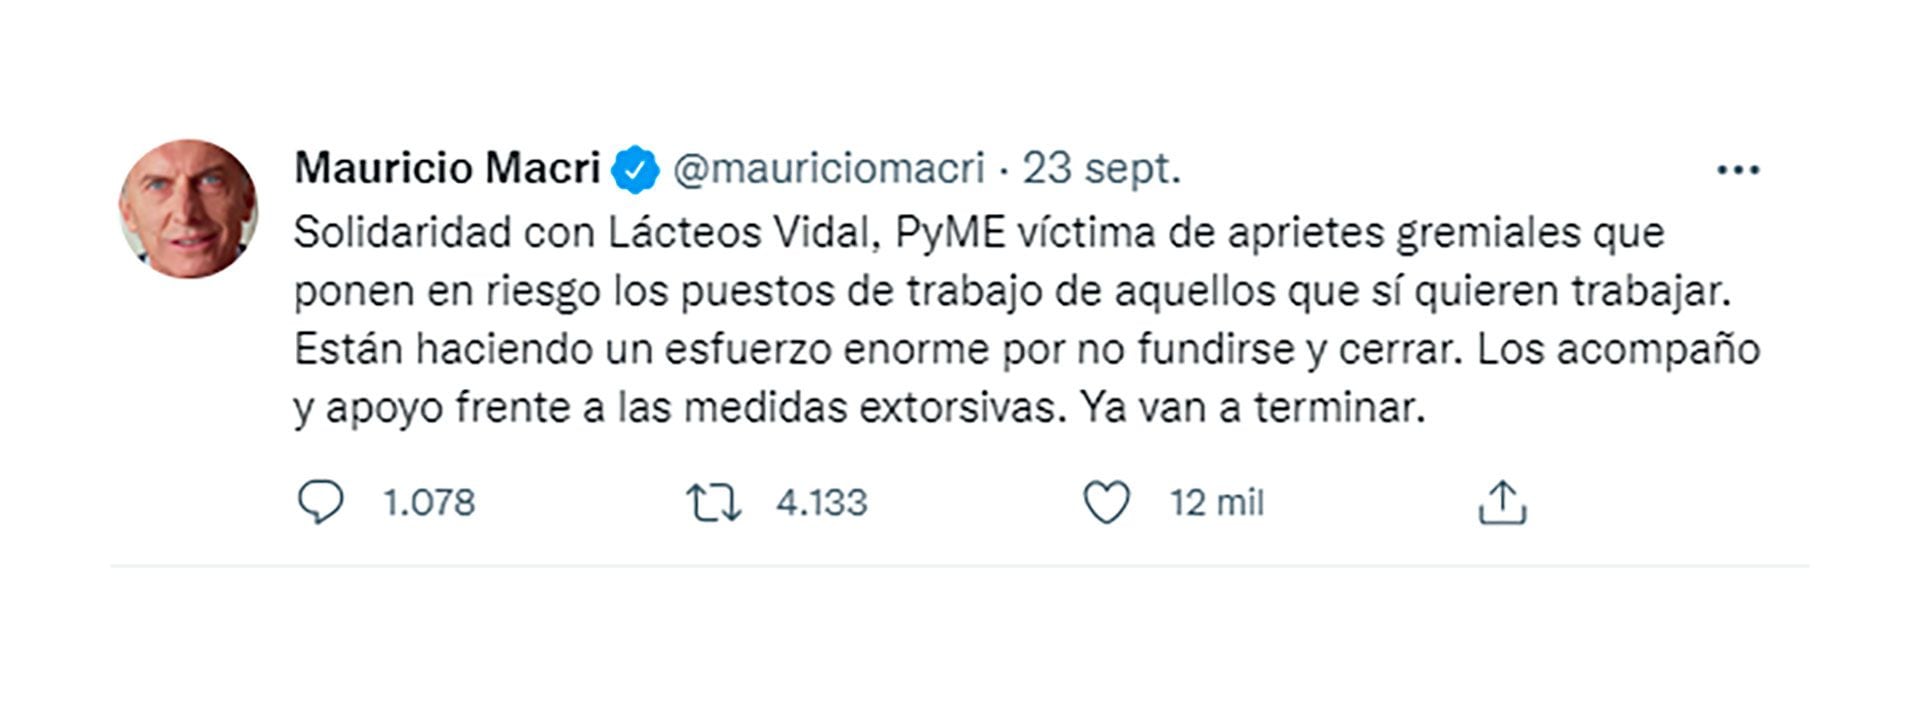 El tuit del expresidente Mauricio Macri solidarizándose con la empresa